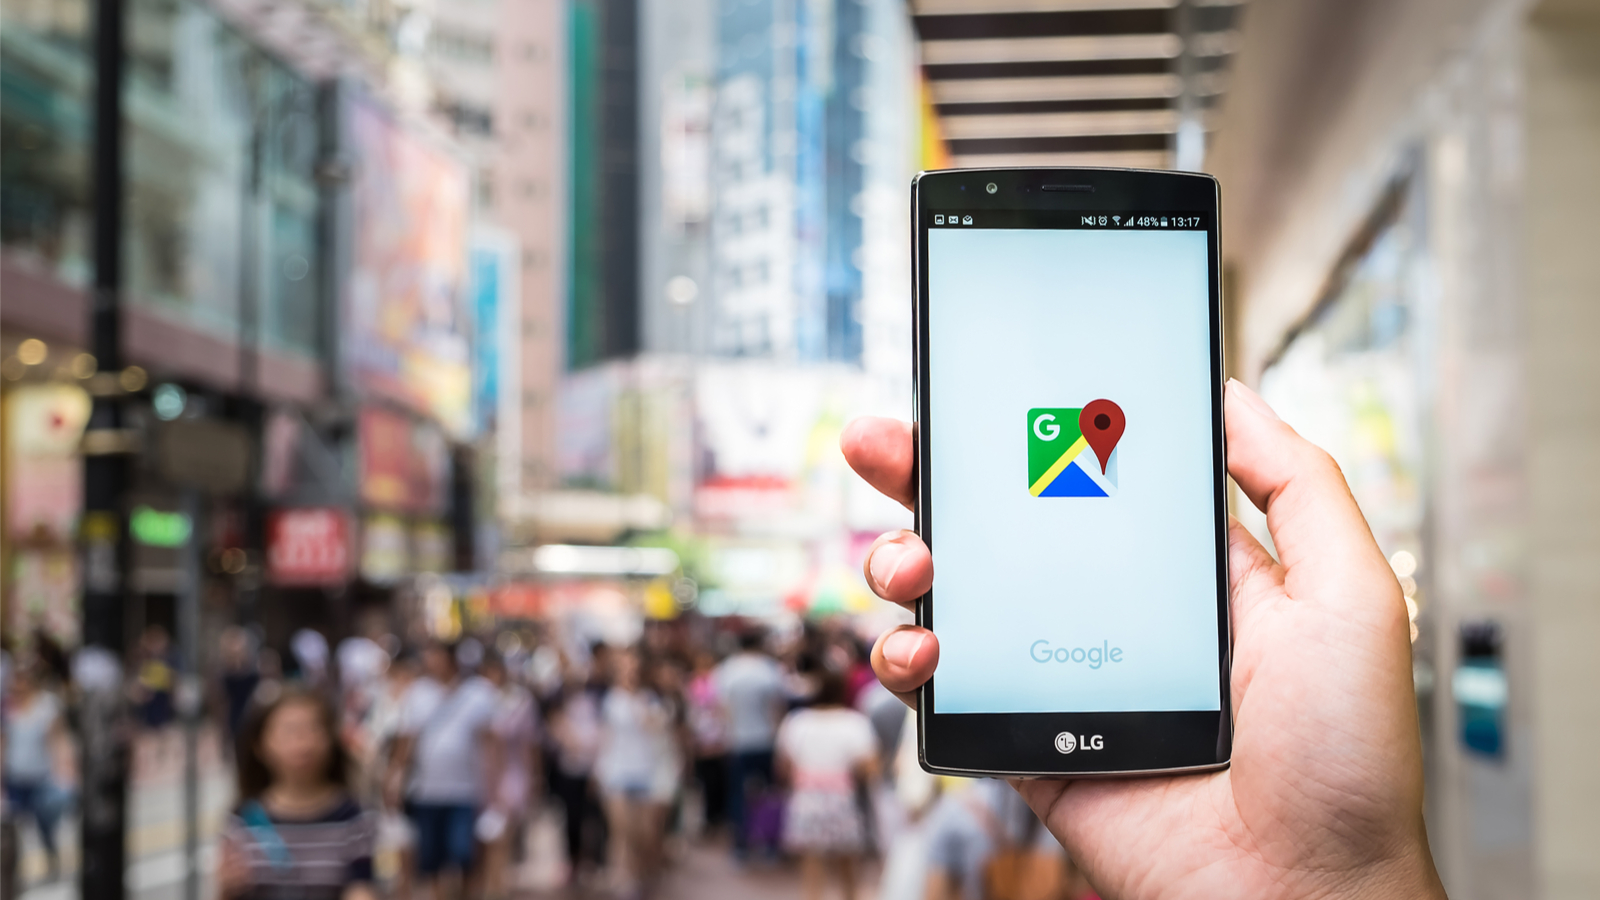 Google Maps dévoile NeRF, la techno qui va révolutionner la vue immersive